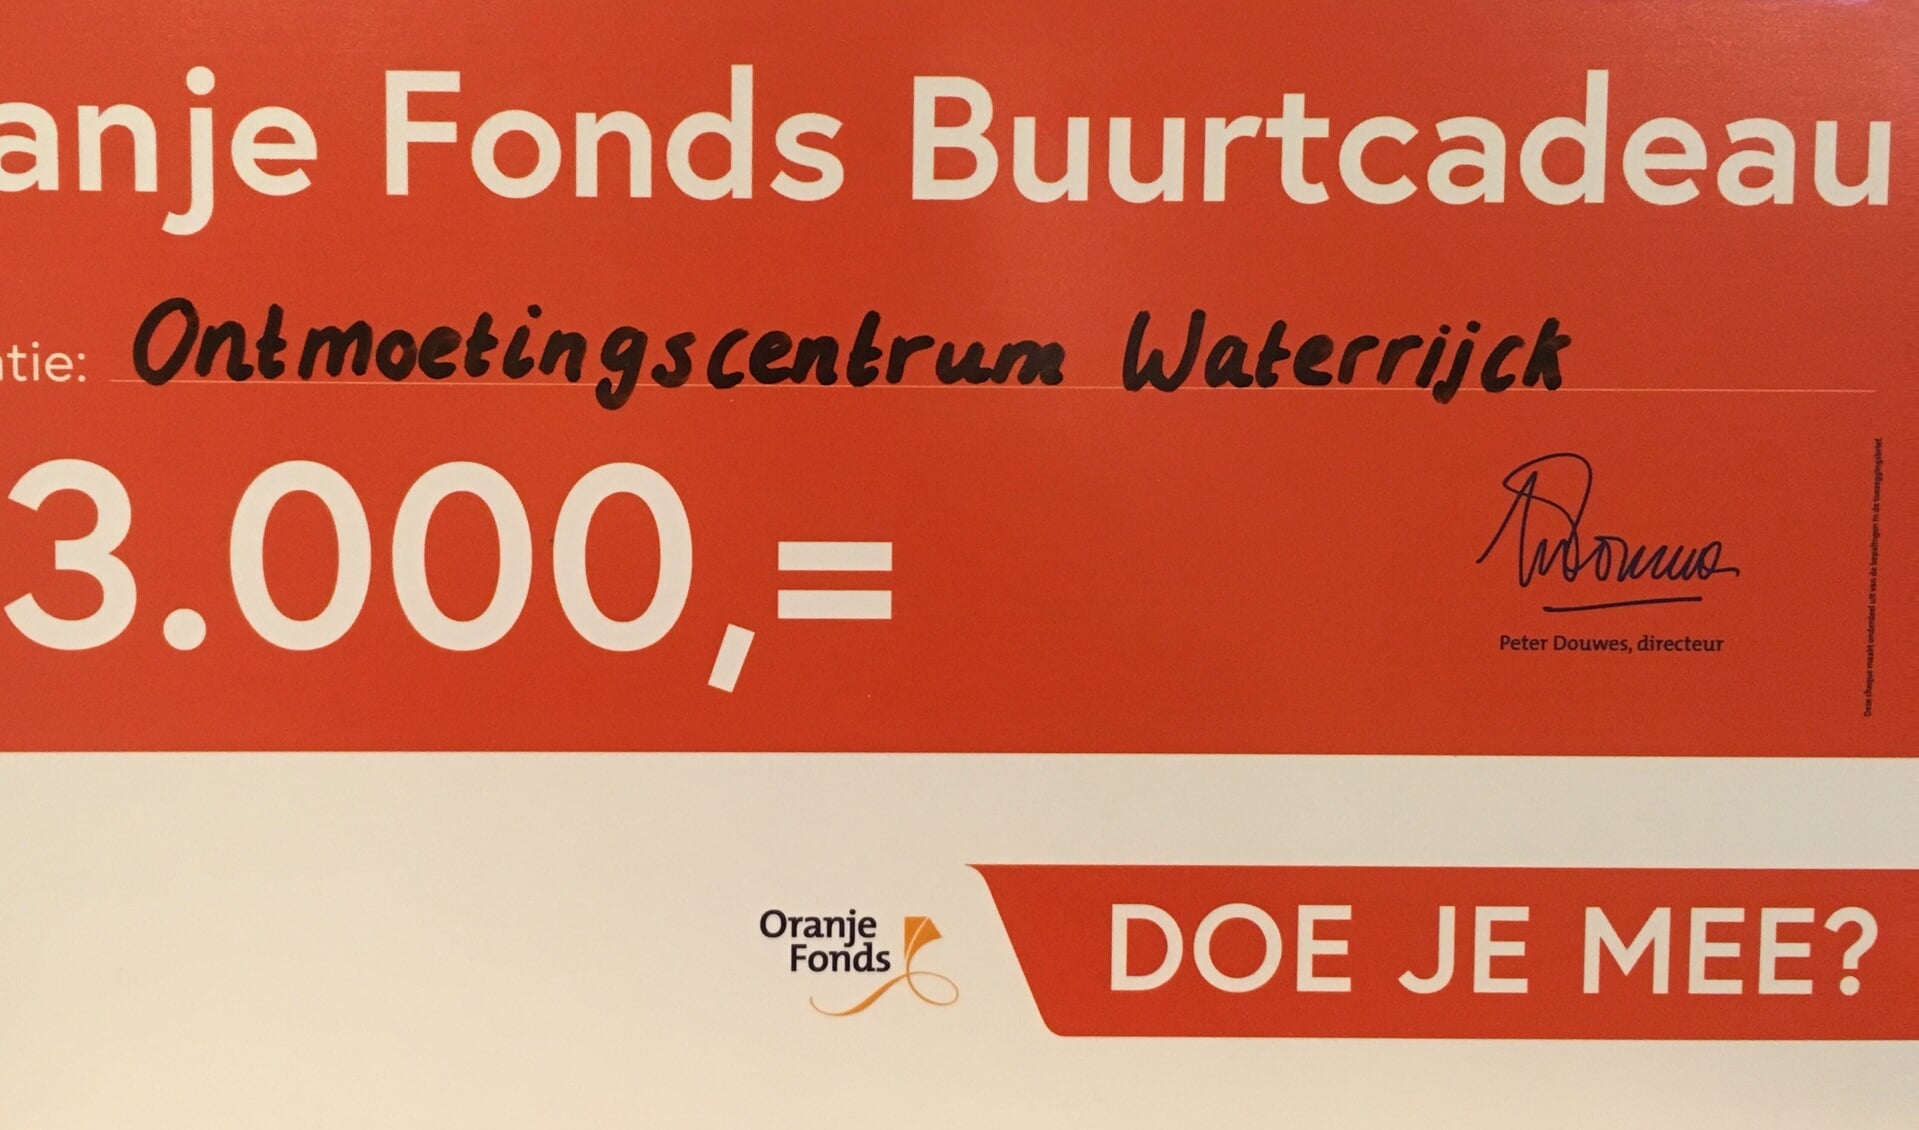 Drieduizend euro voor ontmoetingscentrum WaterrijckBuurtcadeau van Oranje Fonds uitgereikt